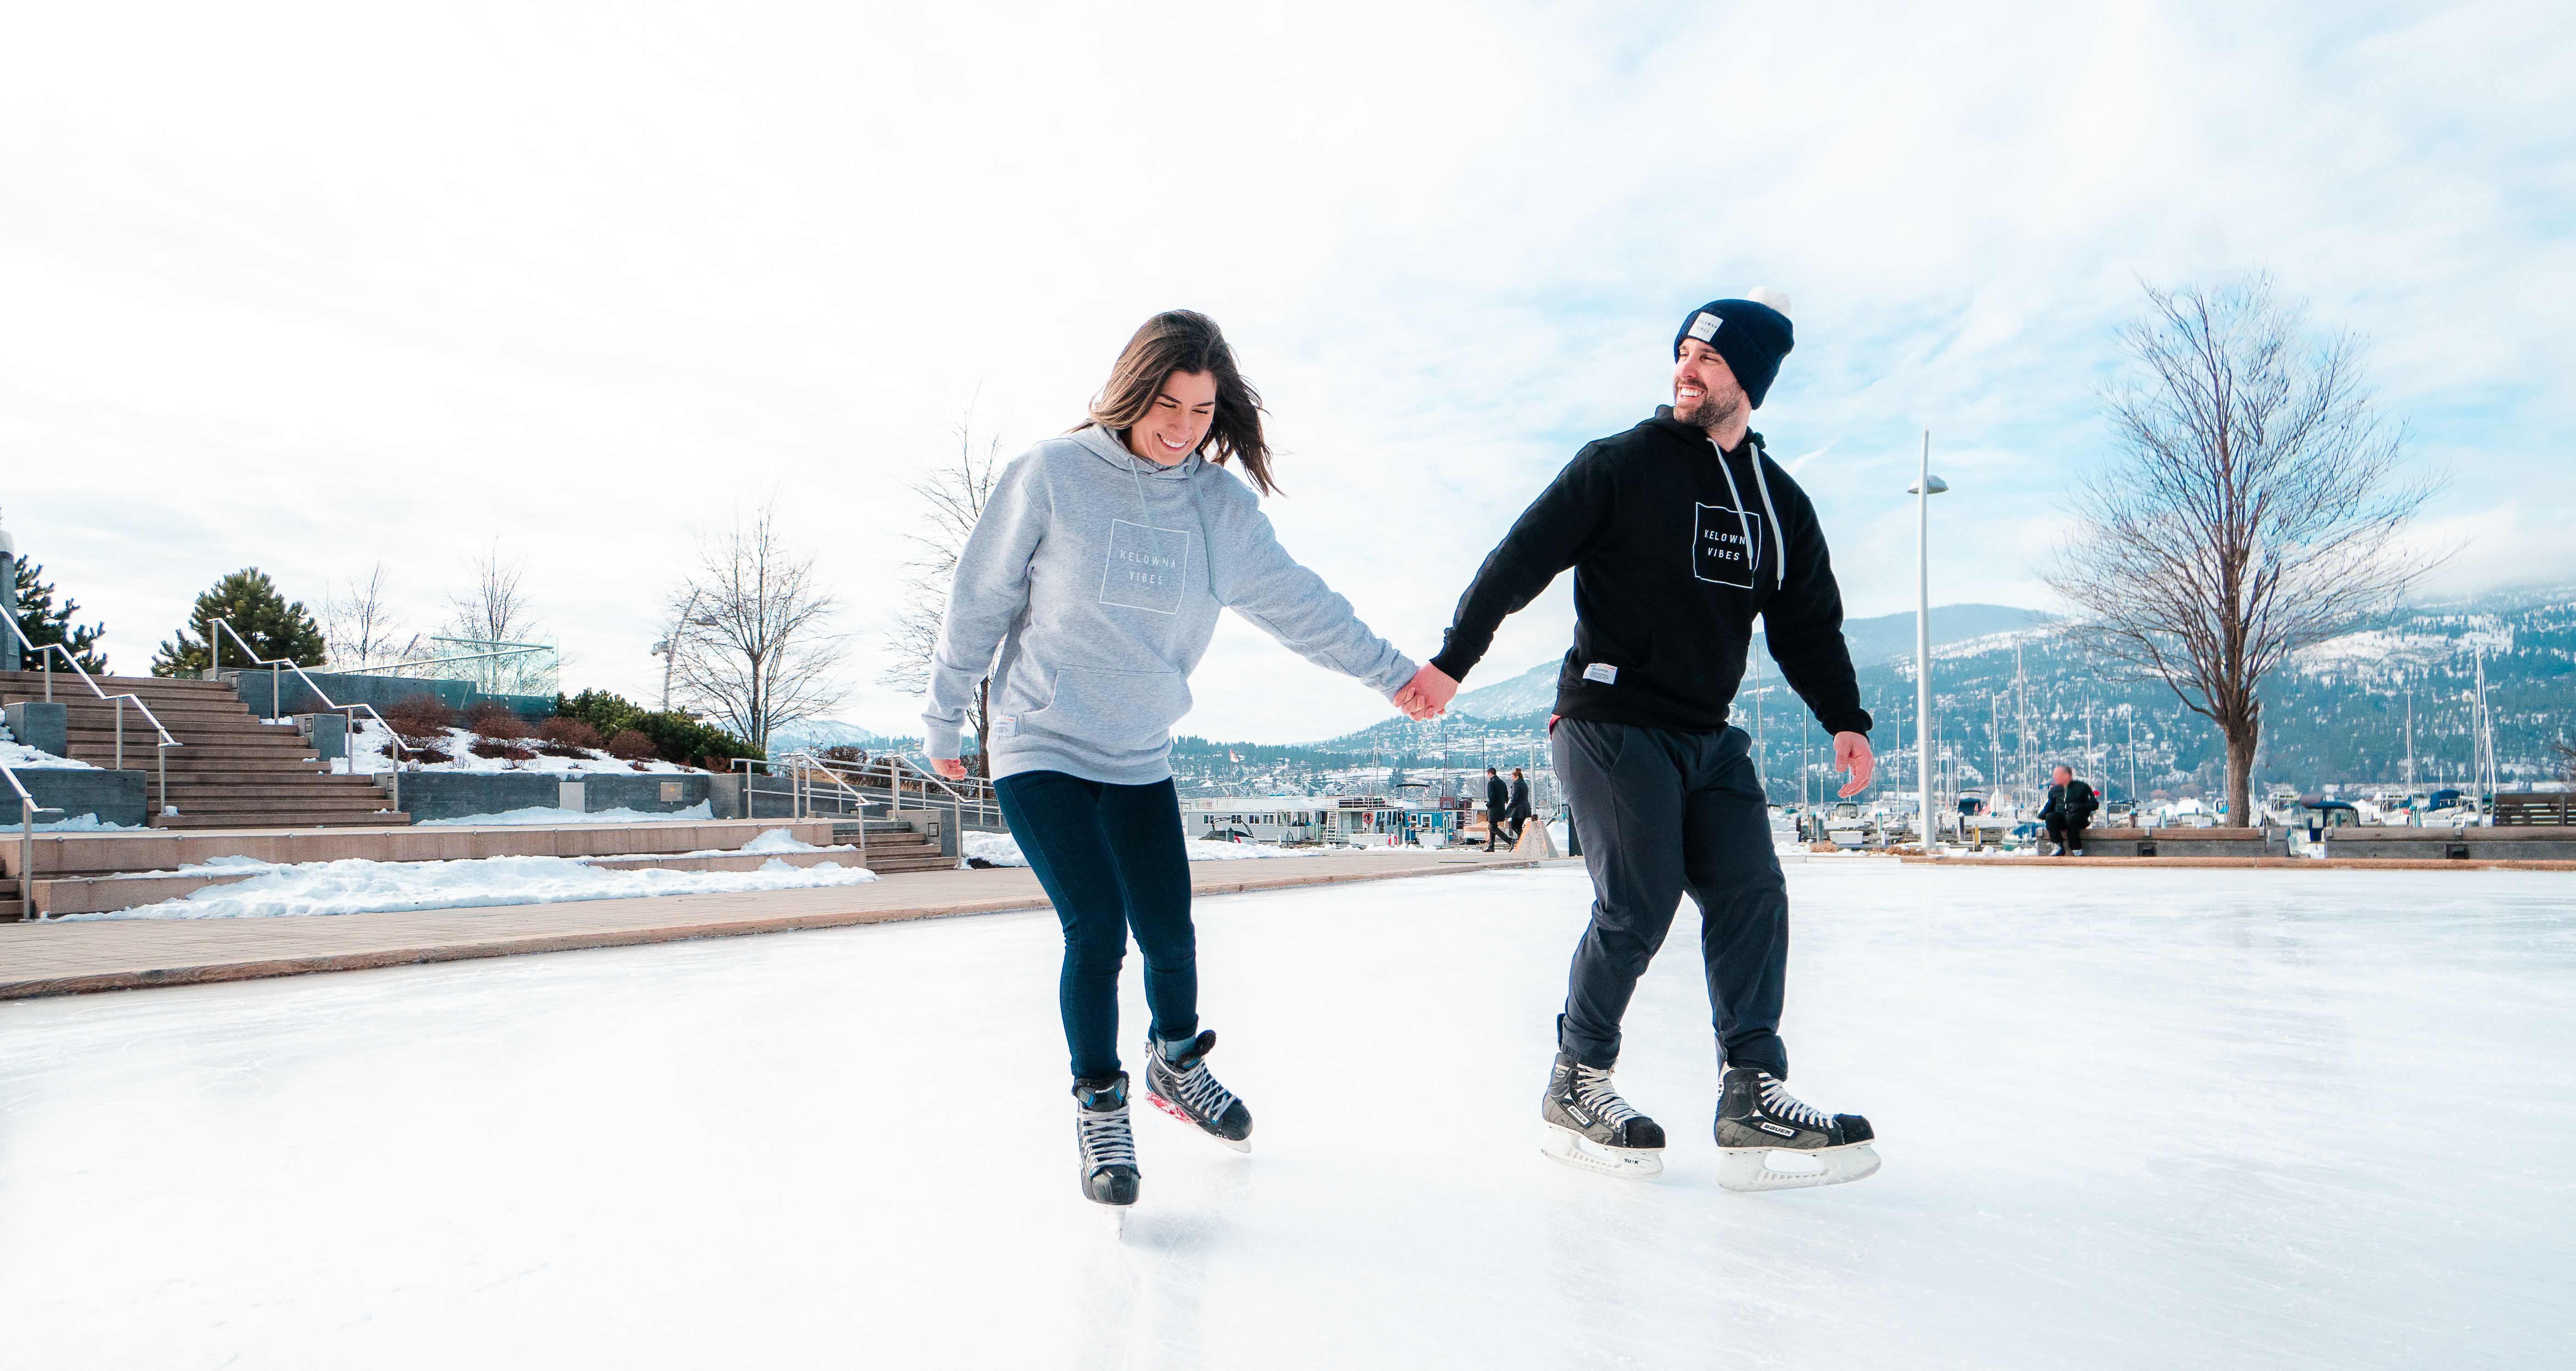 Winter story idea - ice skating